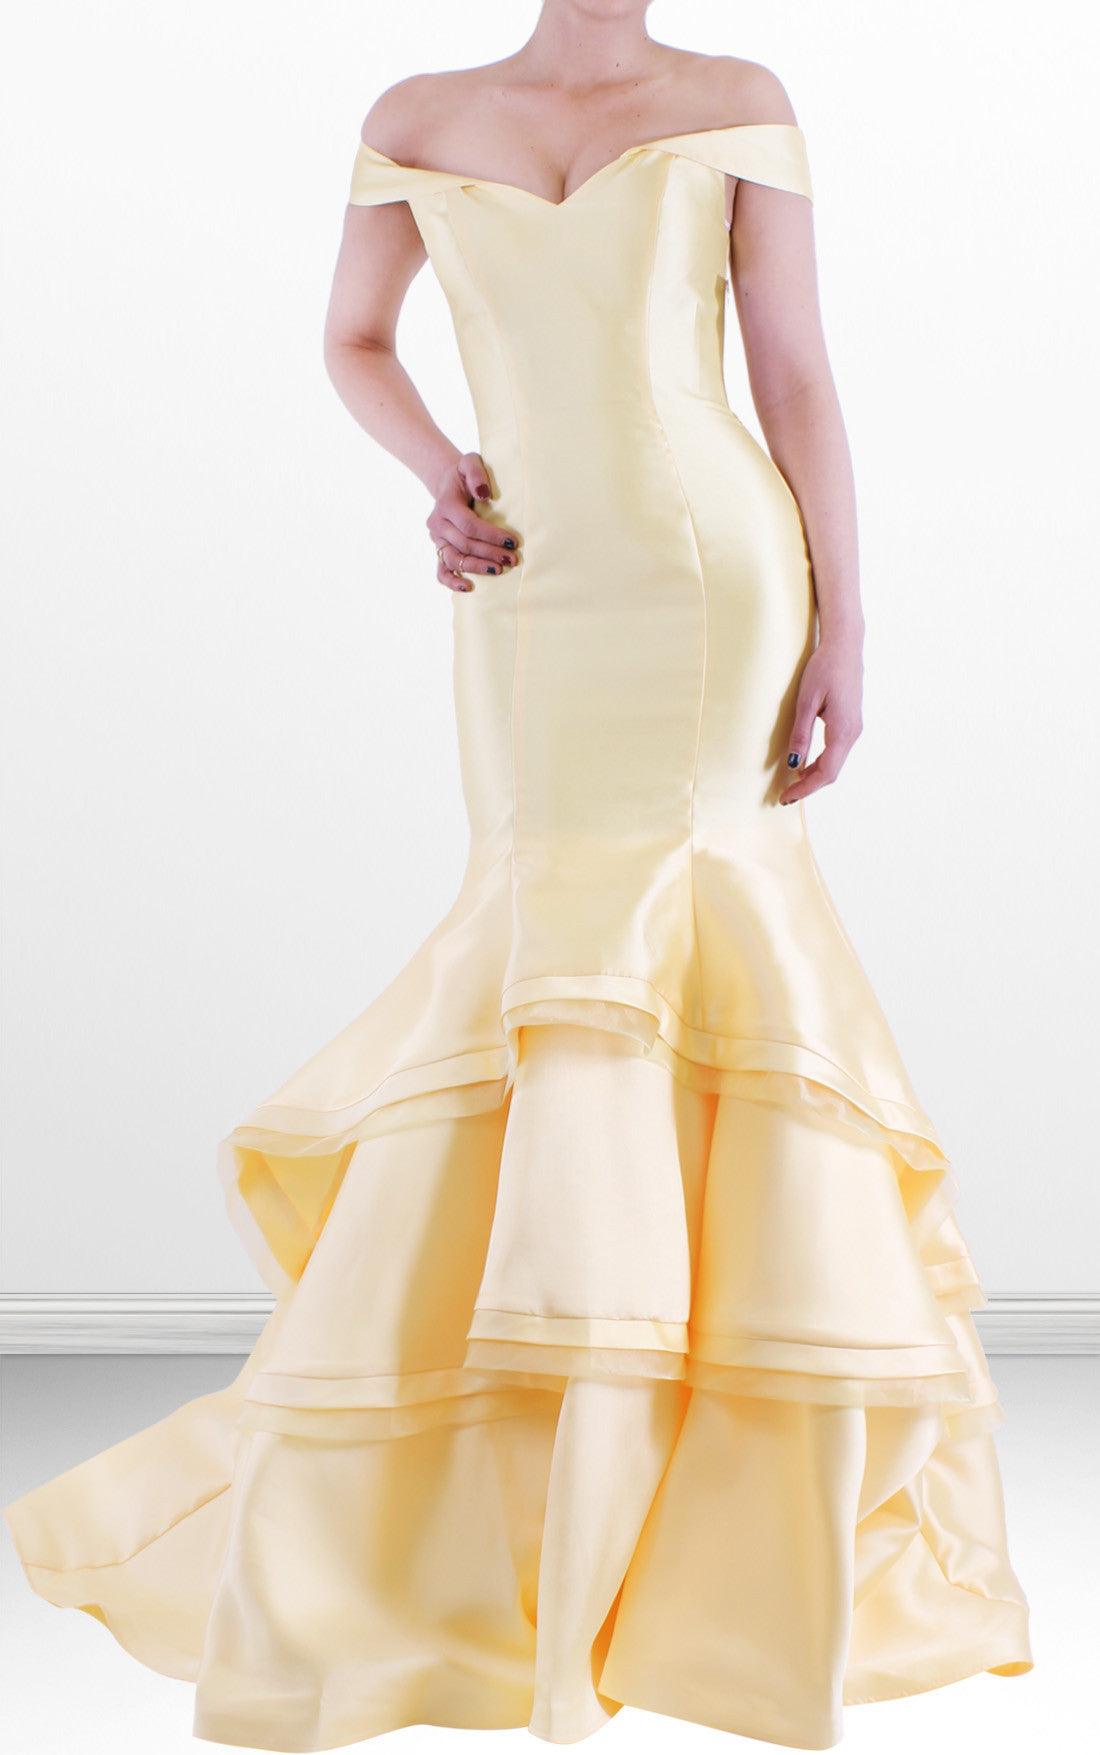 Jovani Long Off Shoulder Prom Dress 31100 - The Dress Outlet